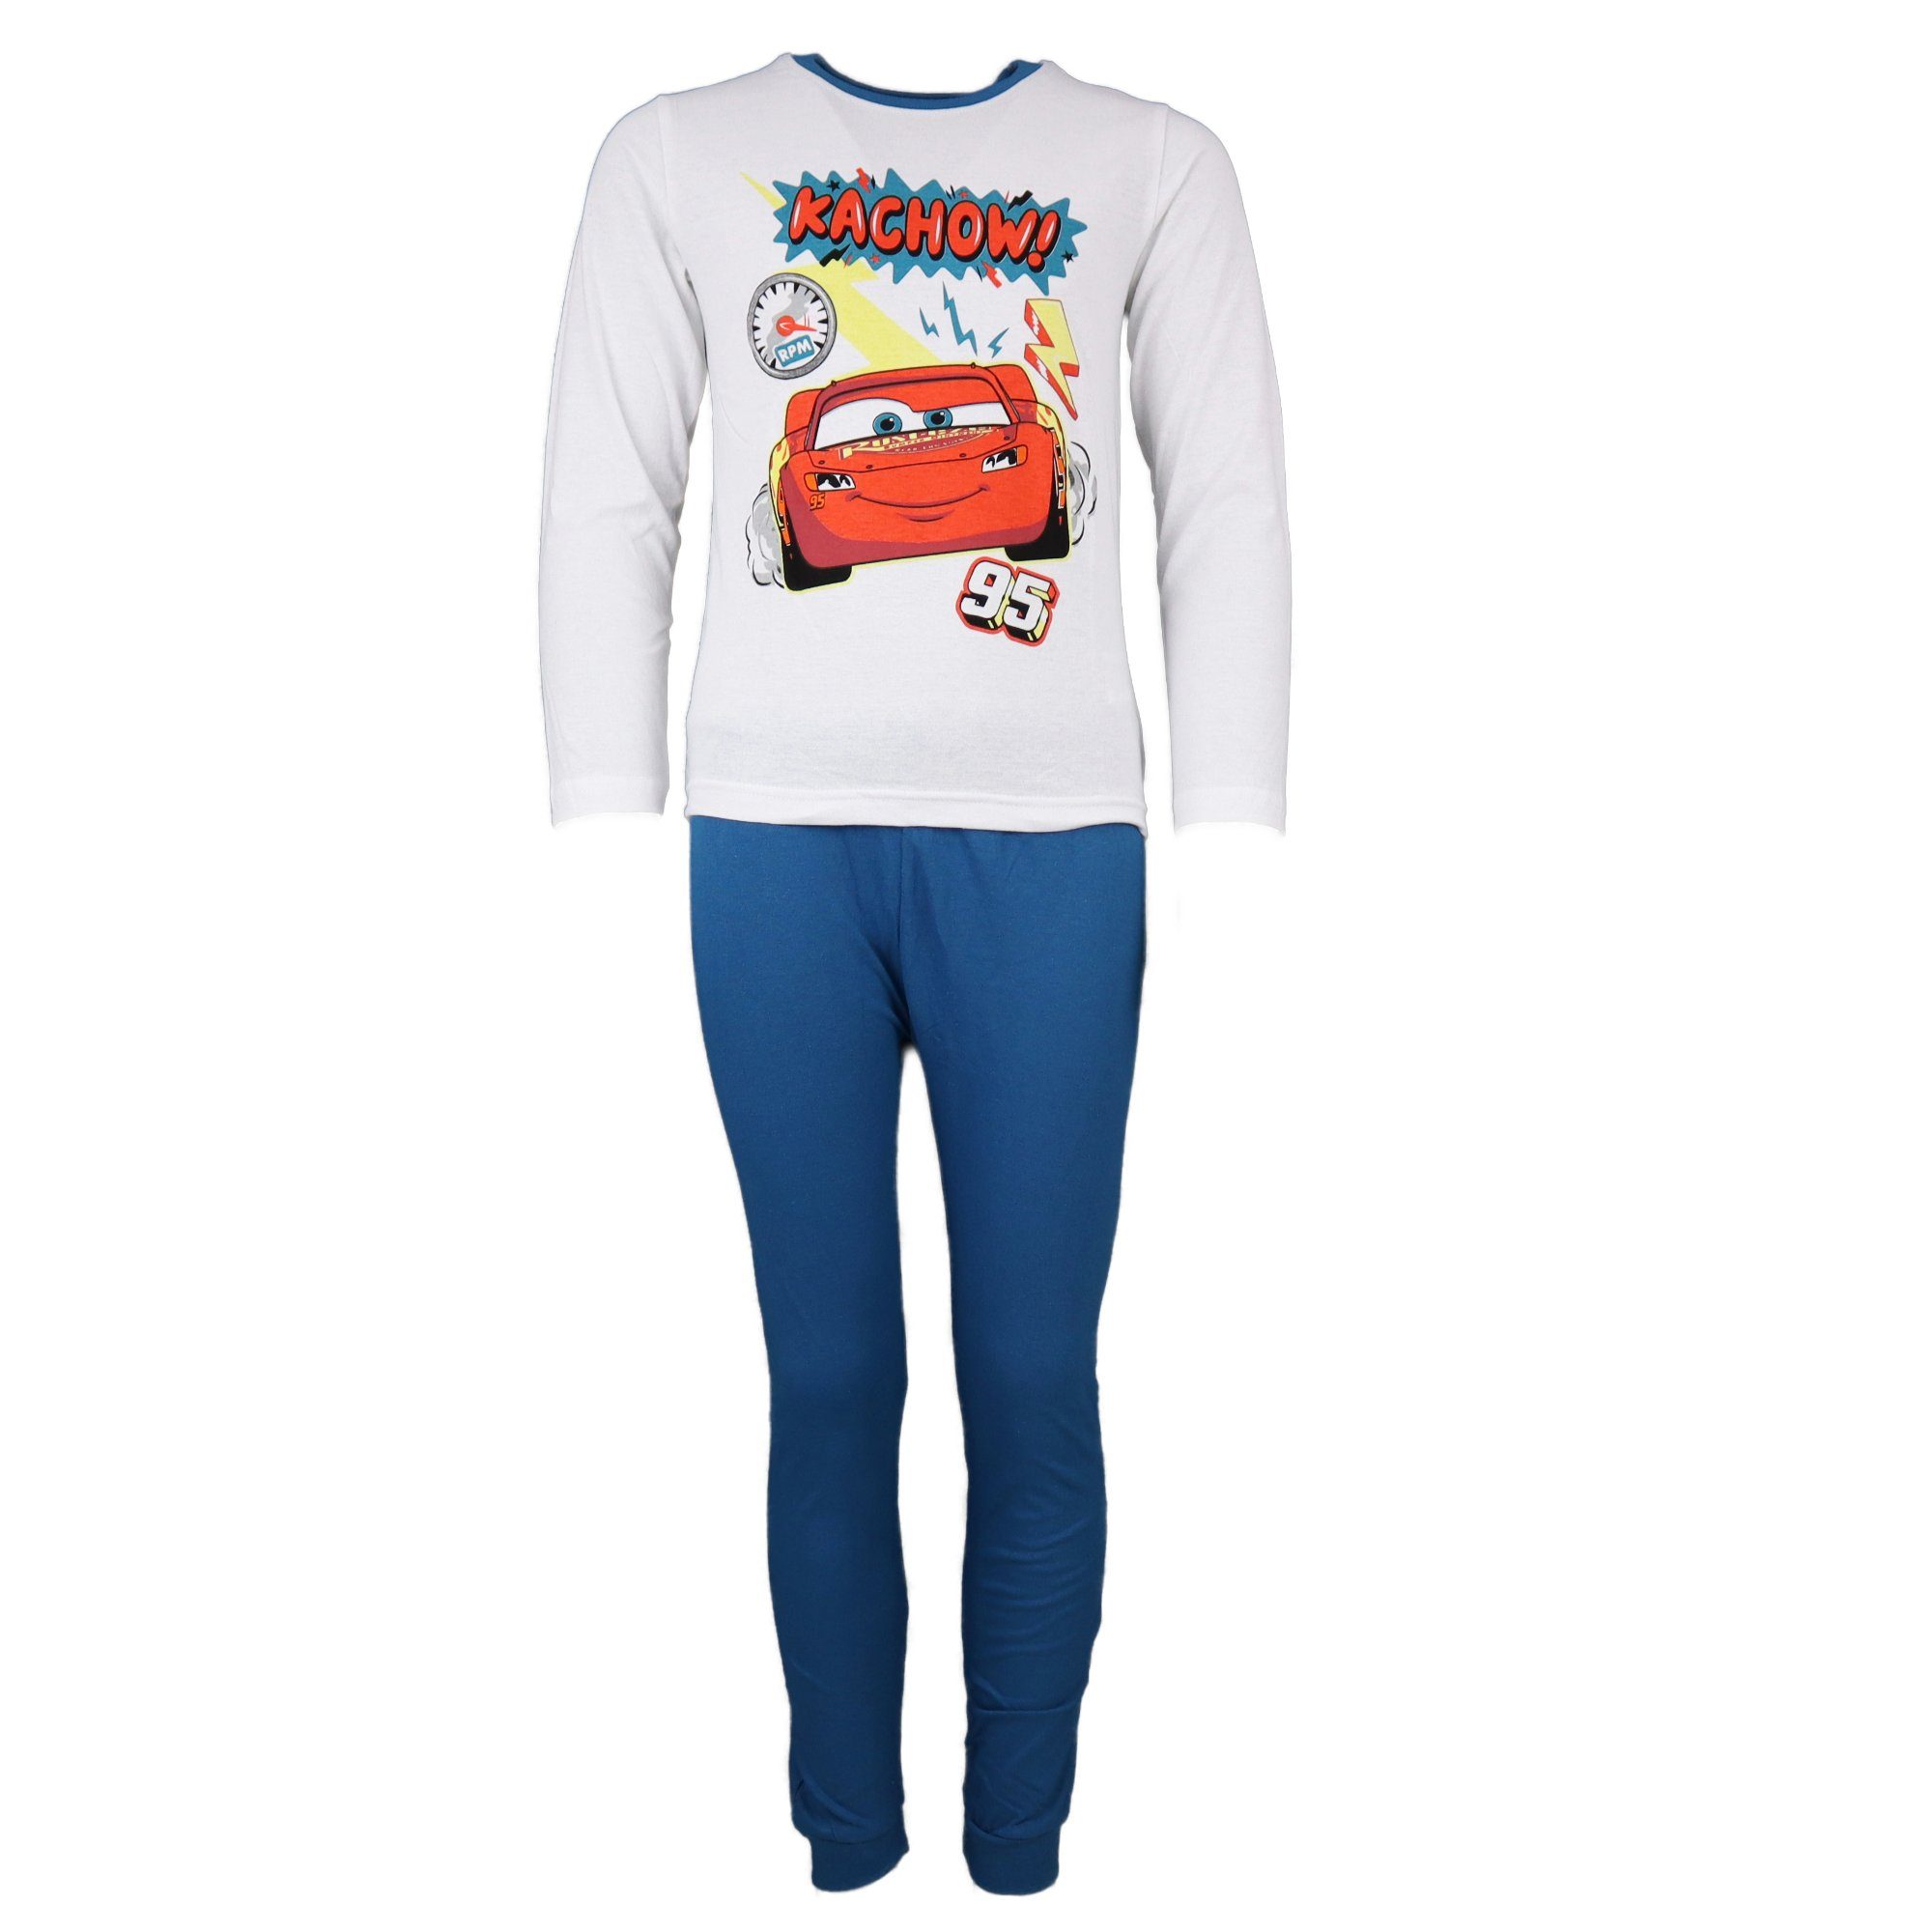 Disney Cars 3 Schlafanzug Lightning 98 100% Gr. Kinder Weiß/Blau bis 128, Baumwolle McQueen Pyjama